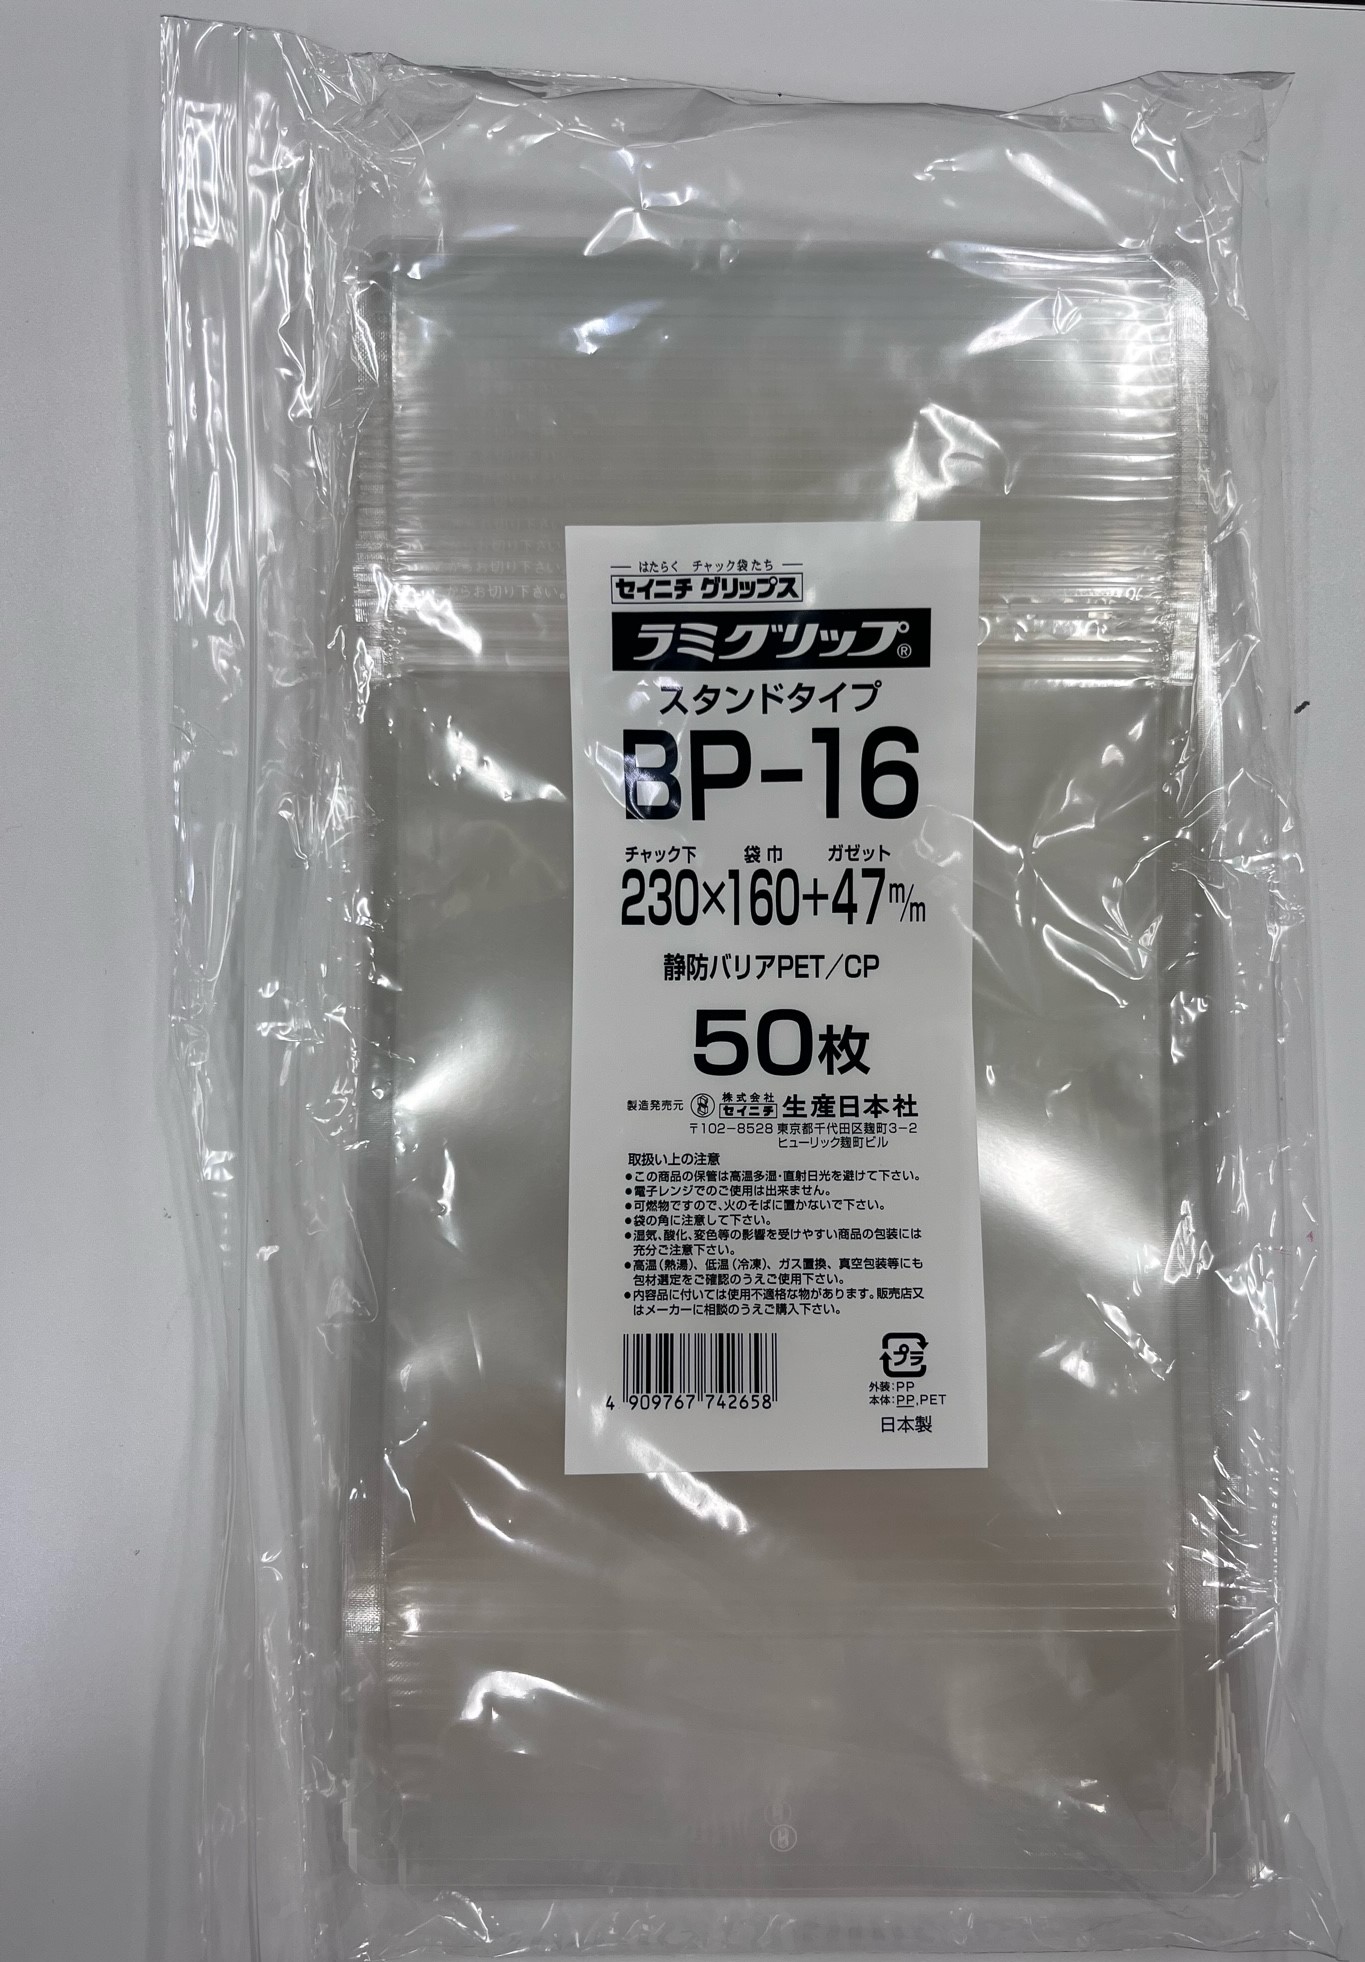 高価値セリー ラミグリップ BP-14 ハイバリアスタンド透明タイプ 生産日本社 セイニチ チャック付き袋 50枚入 